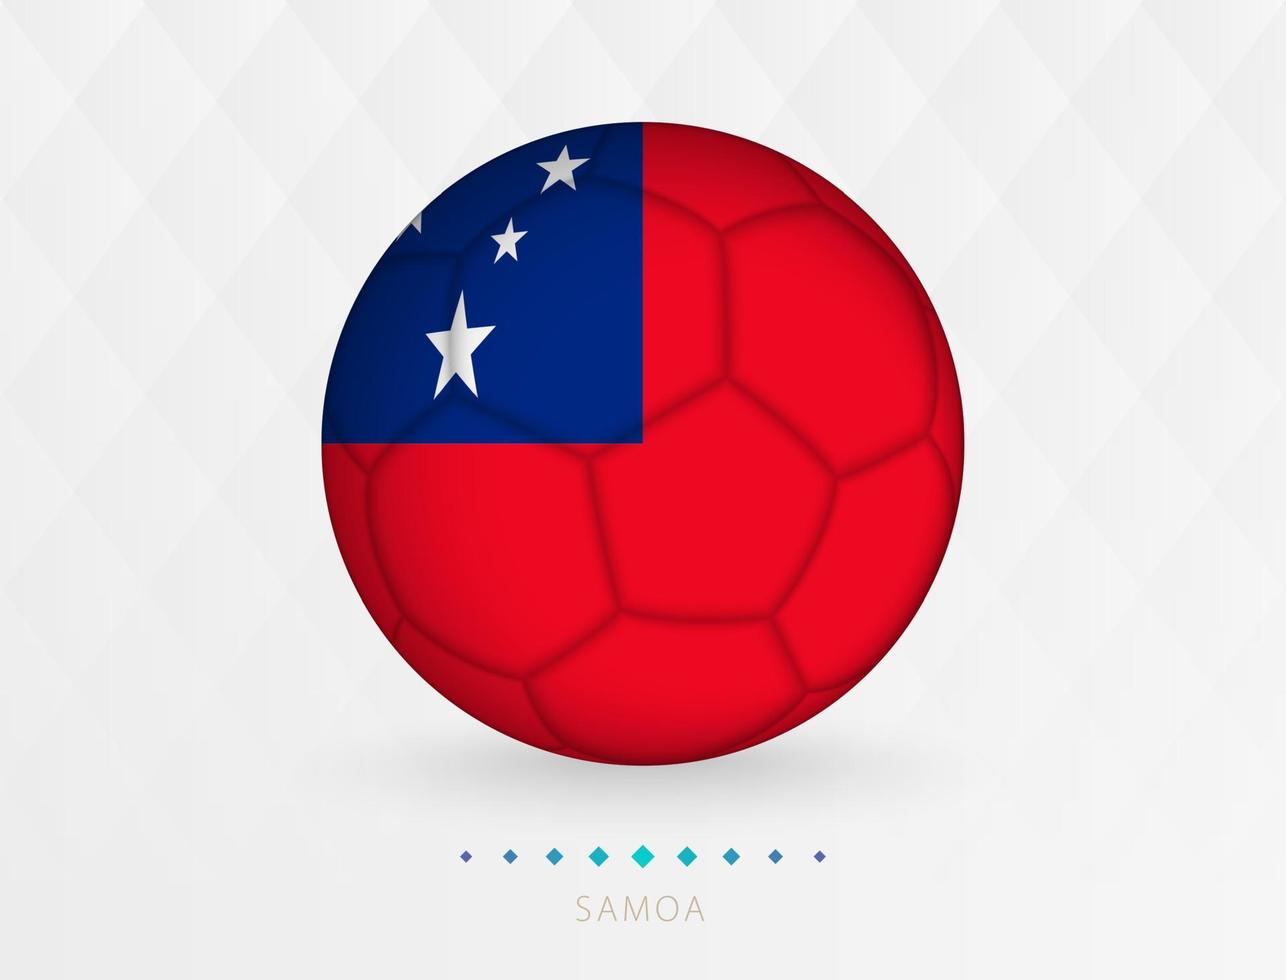 Amerikaans voetbal bal met Samoa vlag patroon, voetbal bal met vlag van Samoa nationaal team. vector